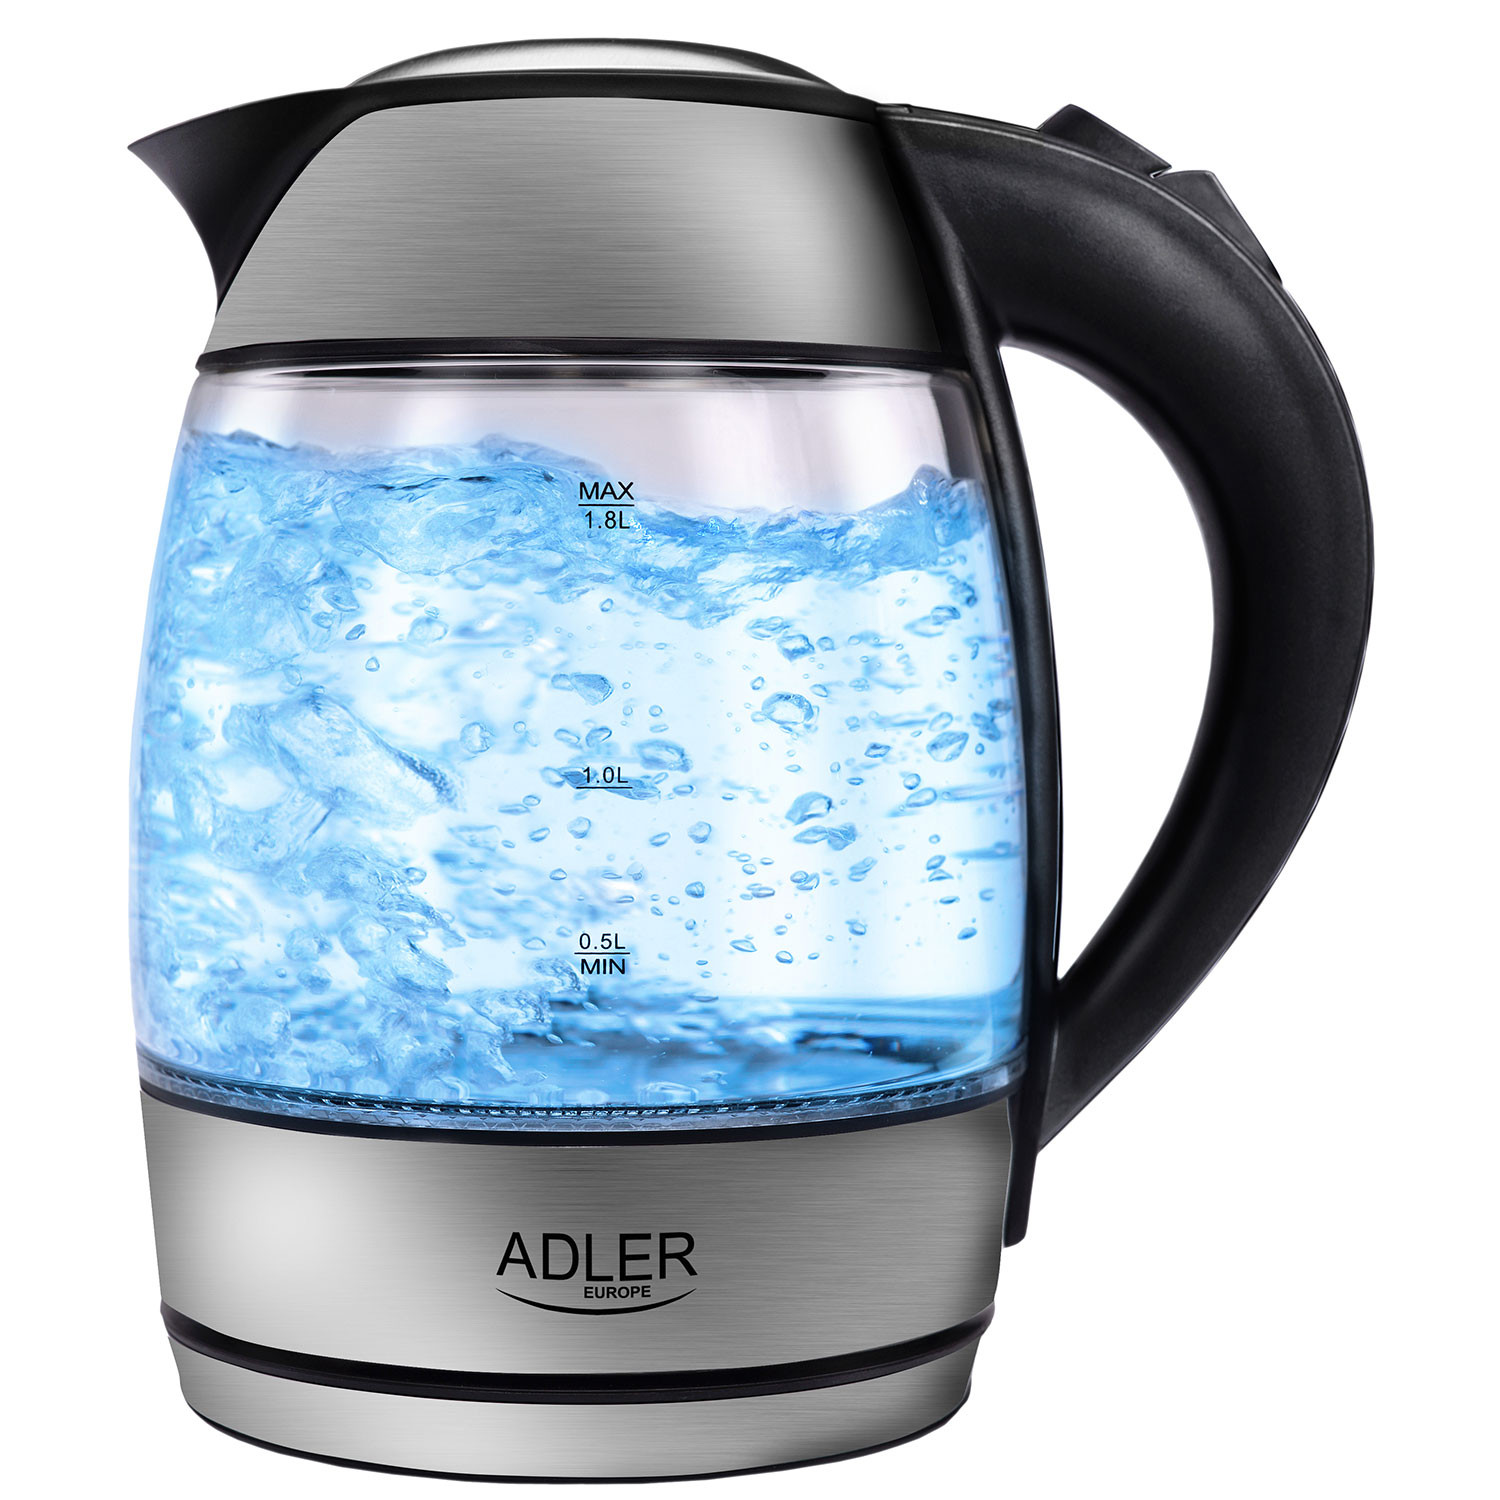 Adler AD1246 Hervidor de Agua Eléctrico Cristal 1,8 Litros